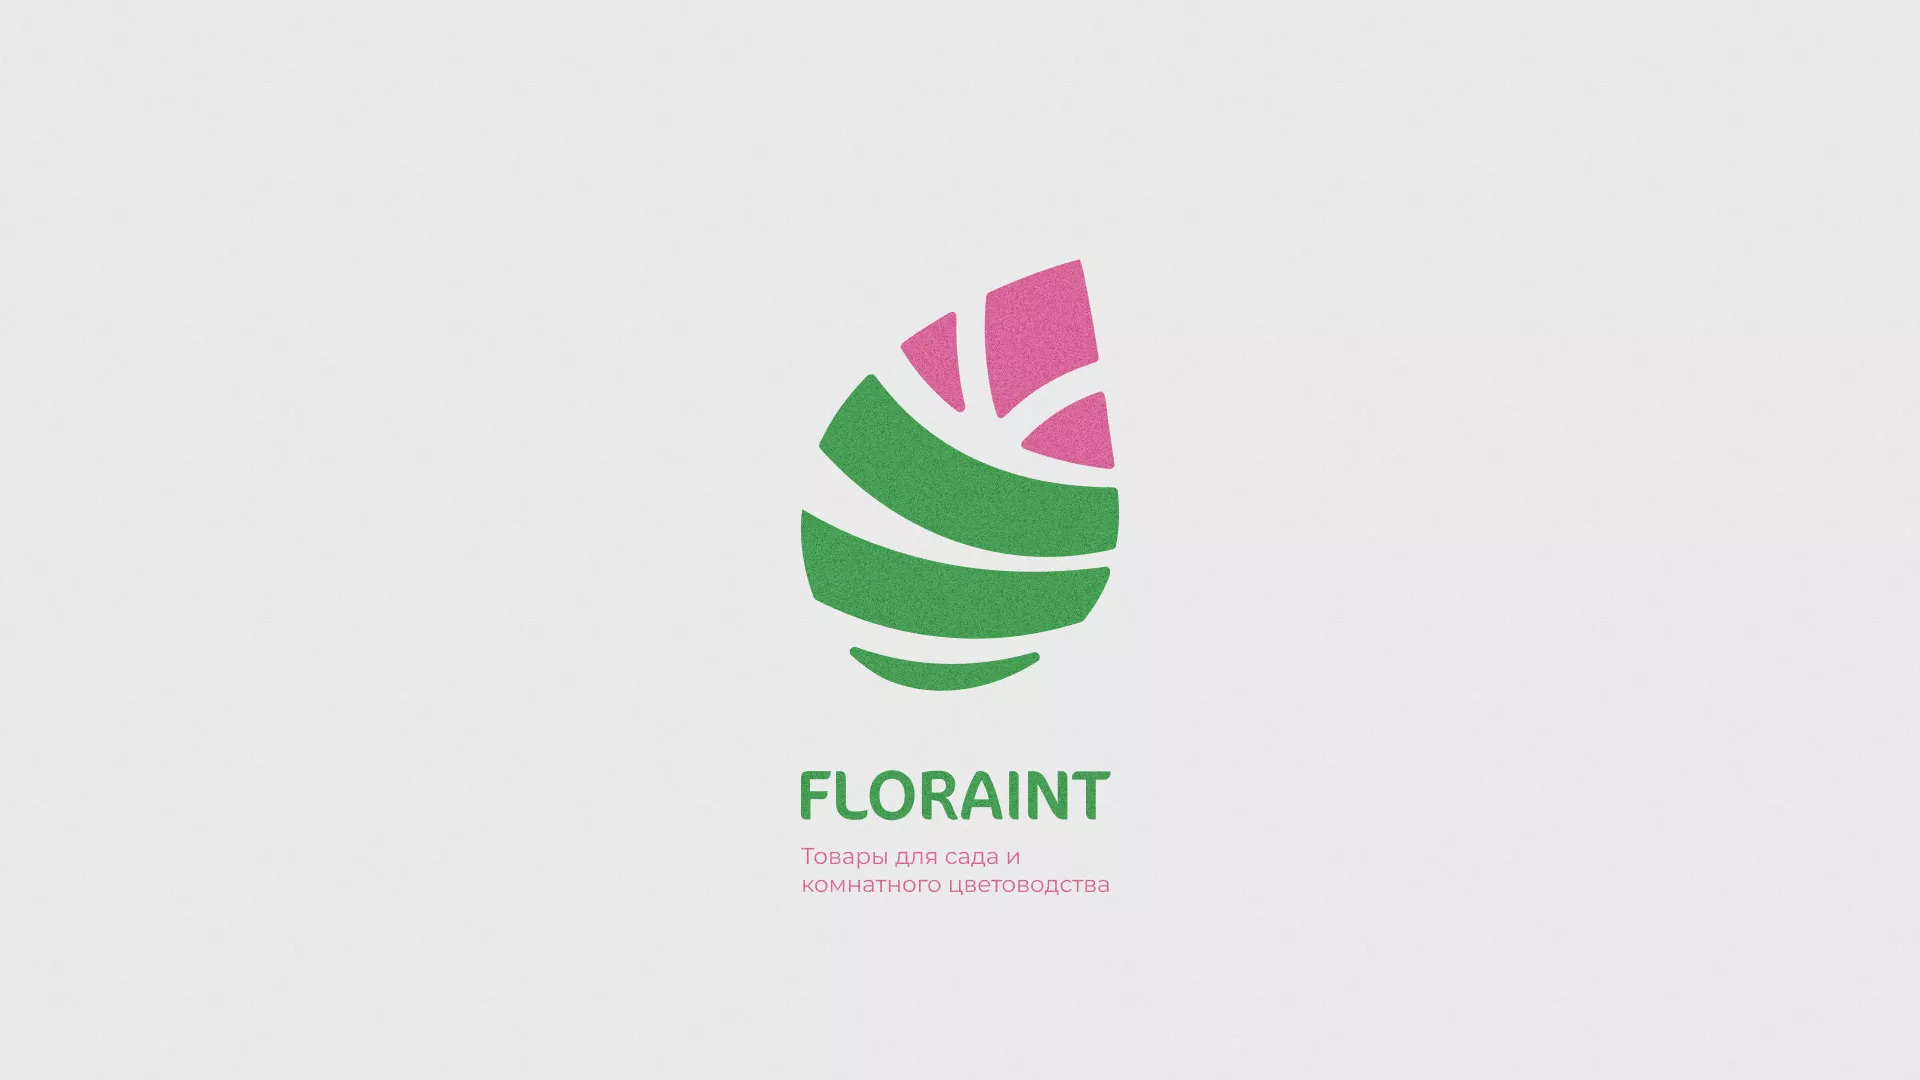 Разработка оформления профиля Instagram для магазина «Floraint» в Вихоревке